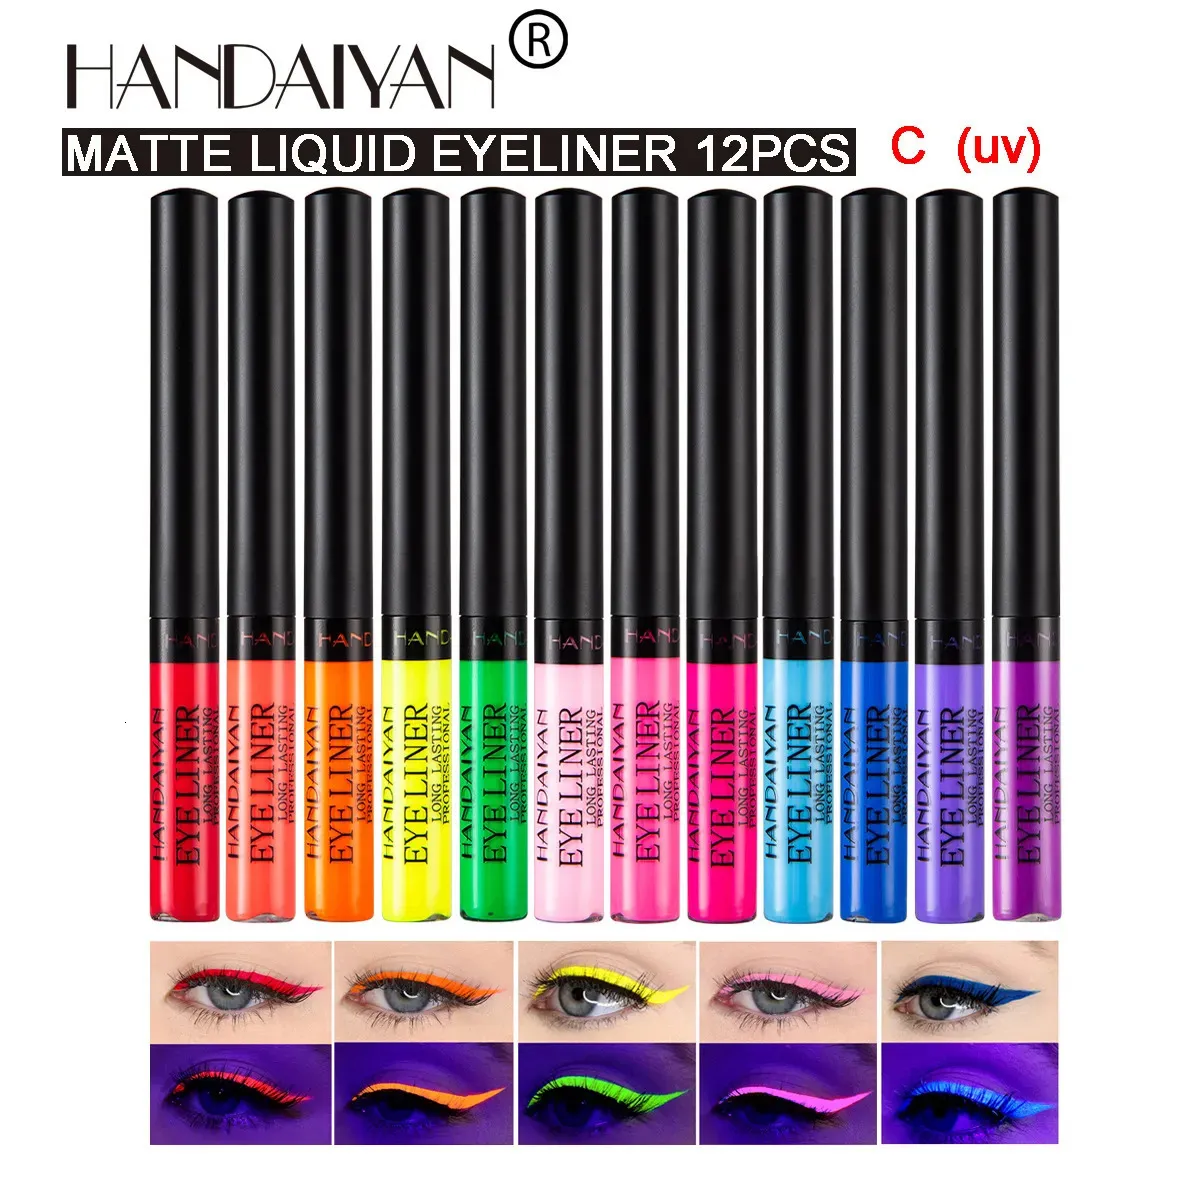 Combinación de sombra de ojos/delineador Handaiyan 12 colores mate UV luminoso líquido colorido delineador de ojos impermeable fácil de usar maquillaje delineador de ojos lápiz 231020